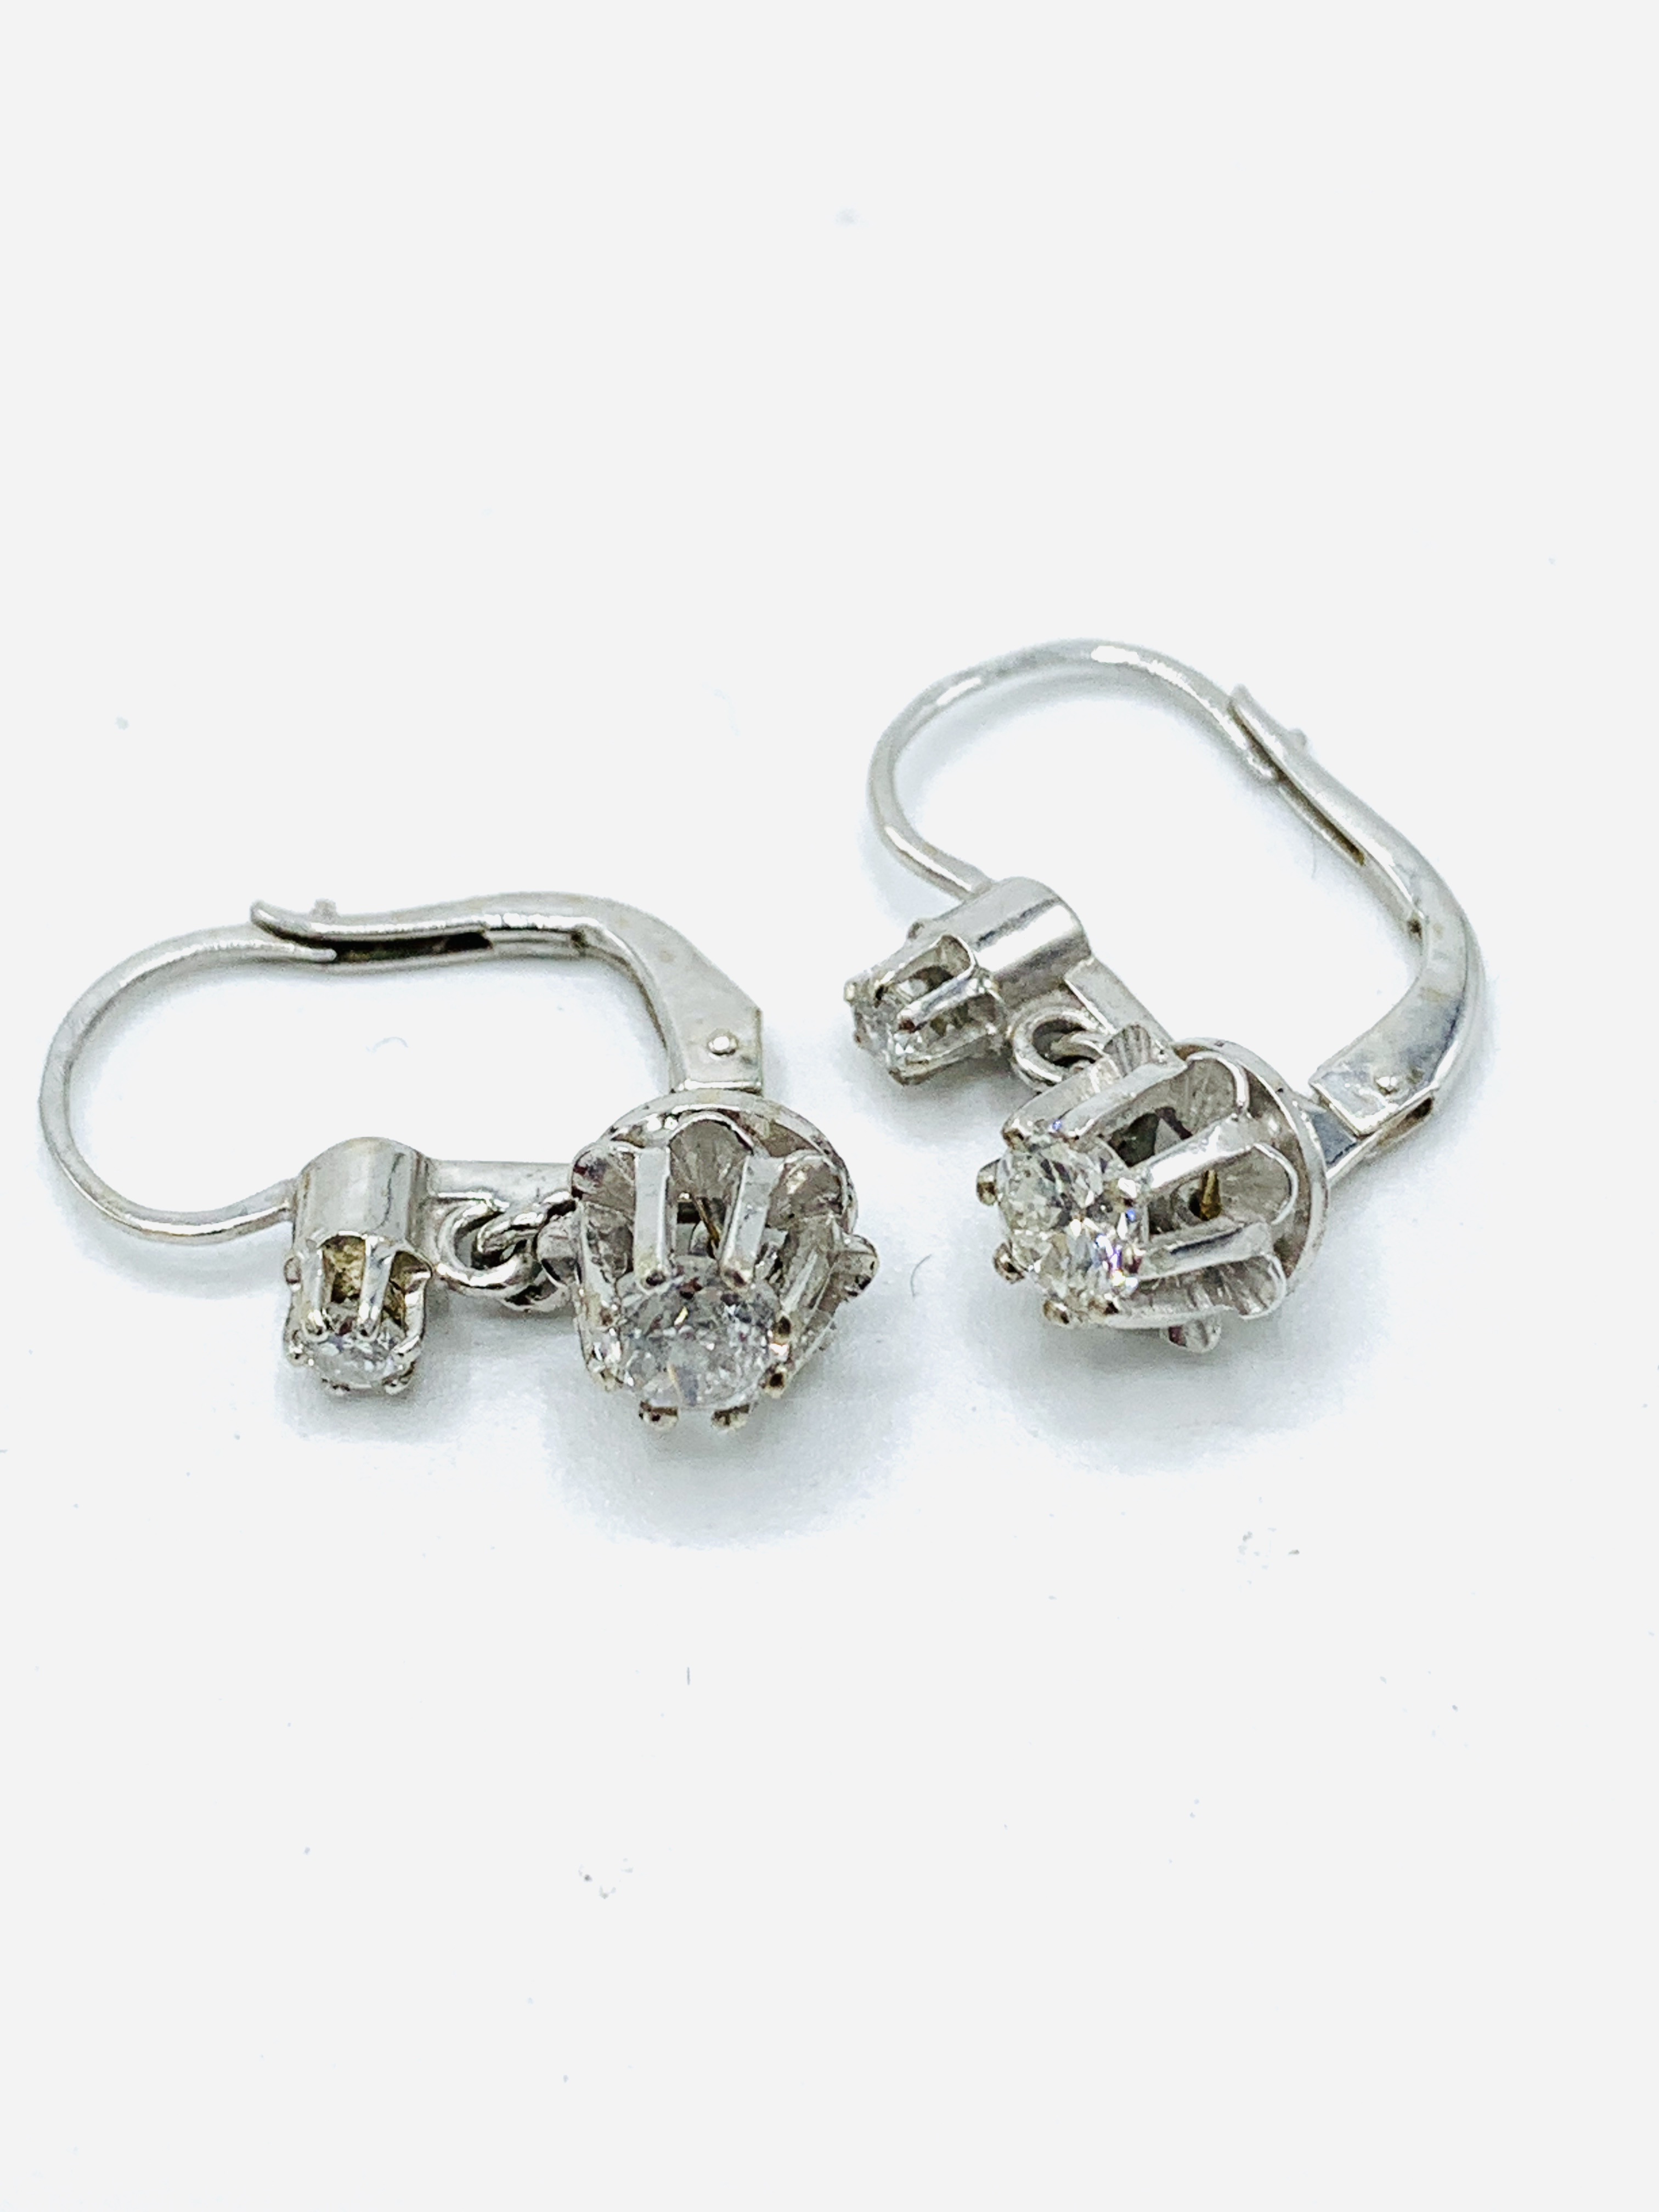 White gold diamond earrings - Image 2 of 3